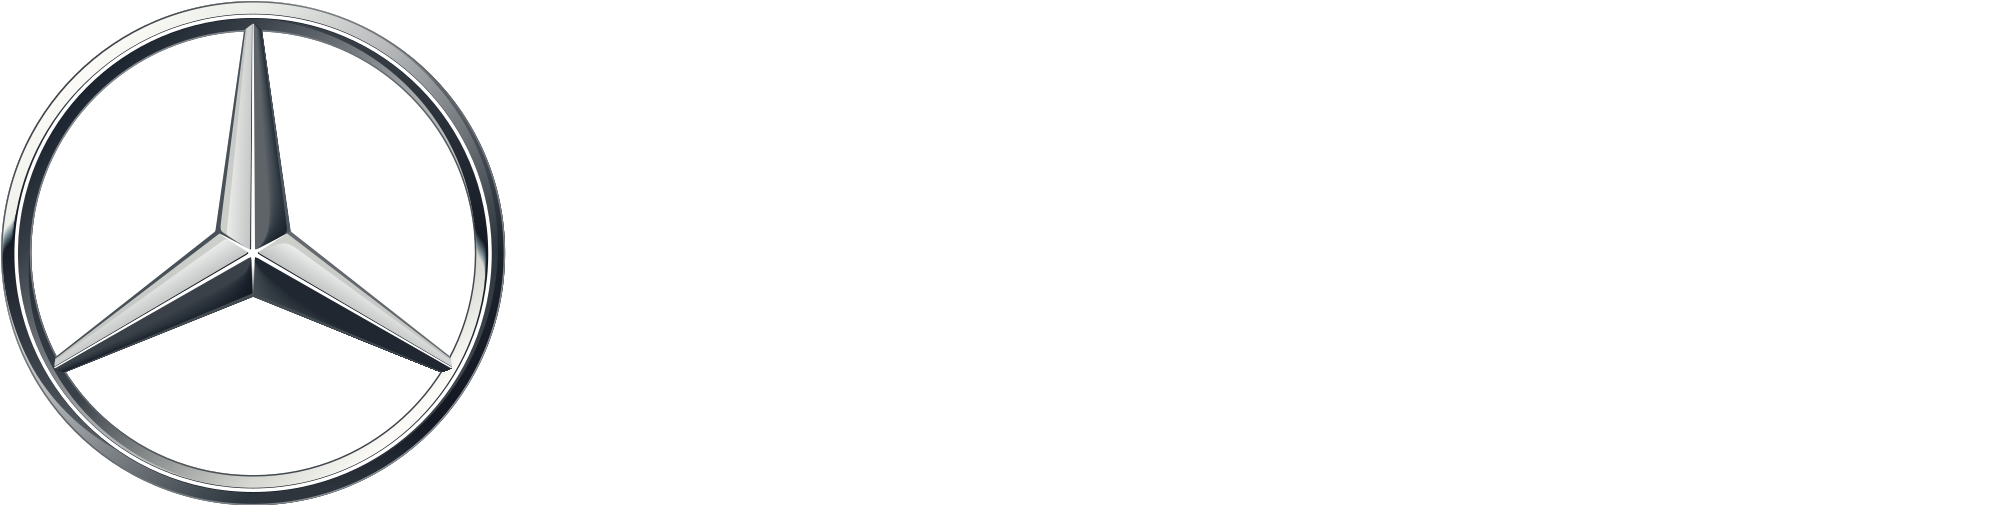 Mercedes-Benz Logo Background PNG Image